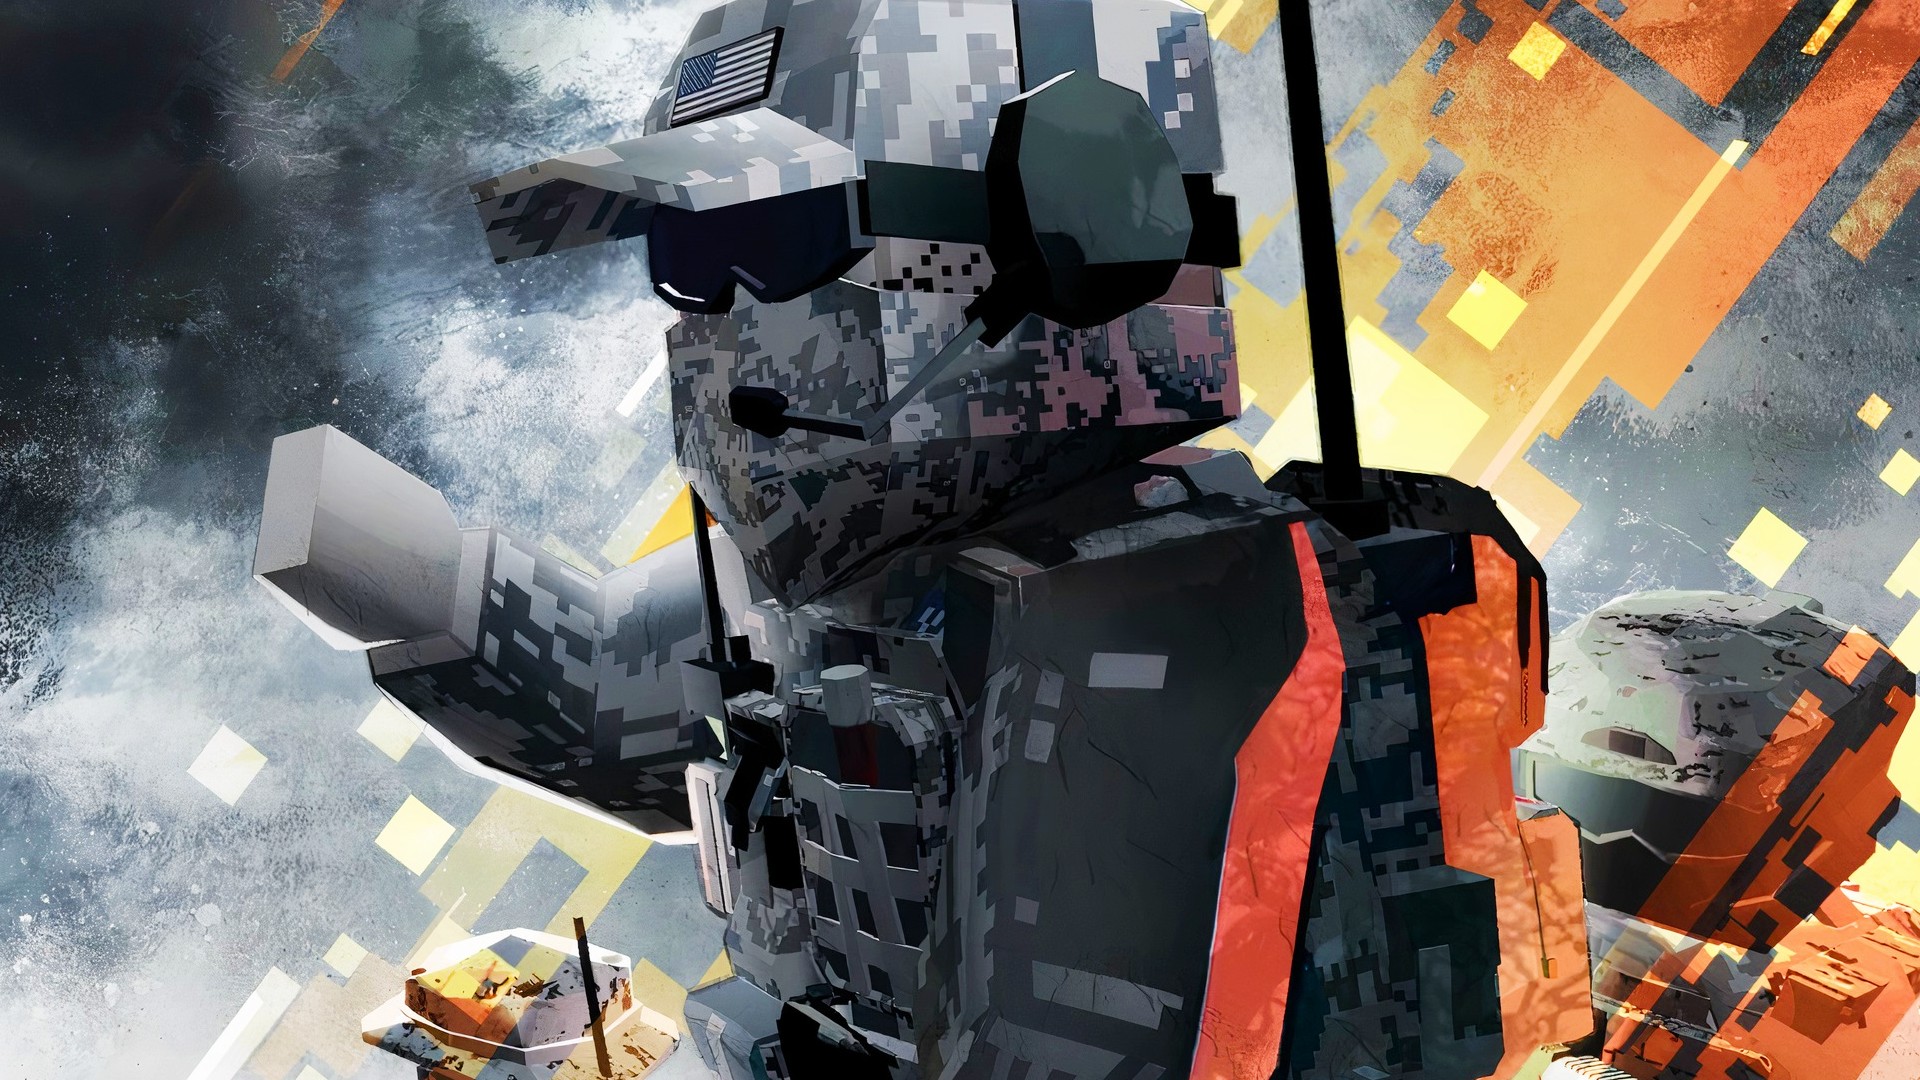 BattleBit Remastered, uma mistura de Battlefield com Roblox, é o jogo mais  vendido no Steam - Adrenaline